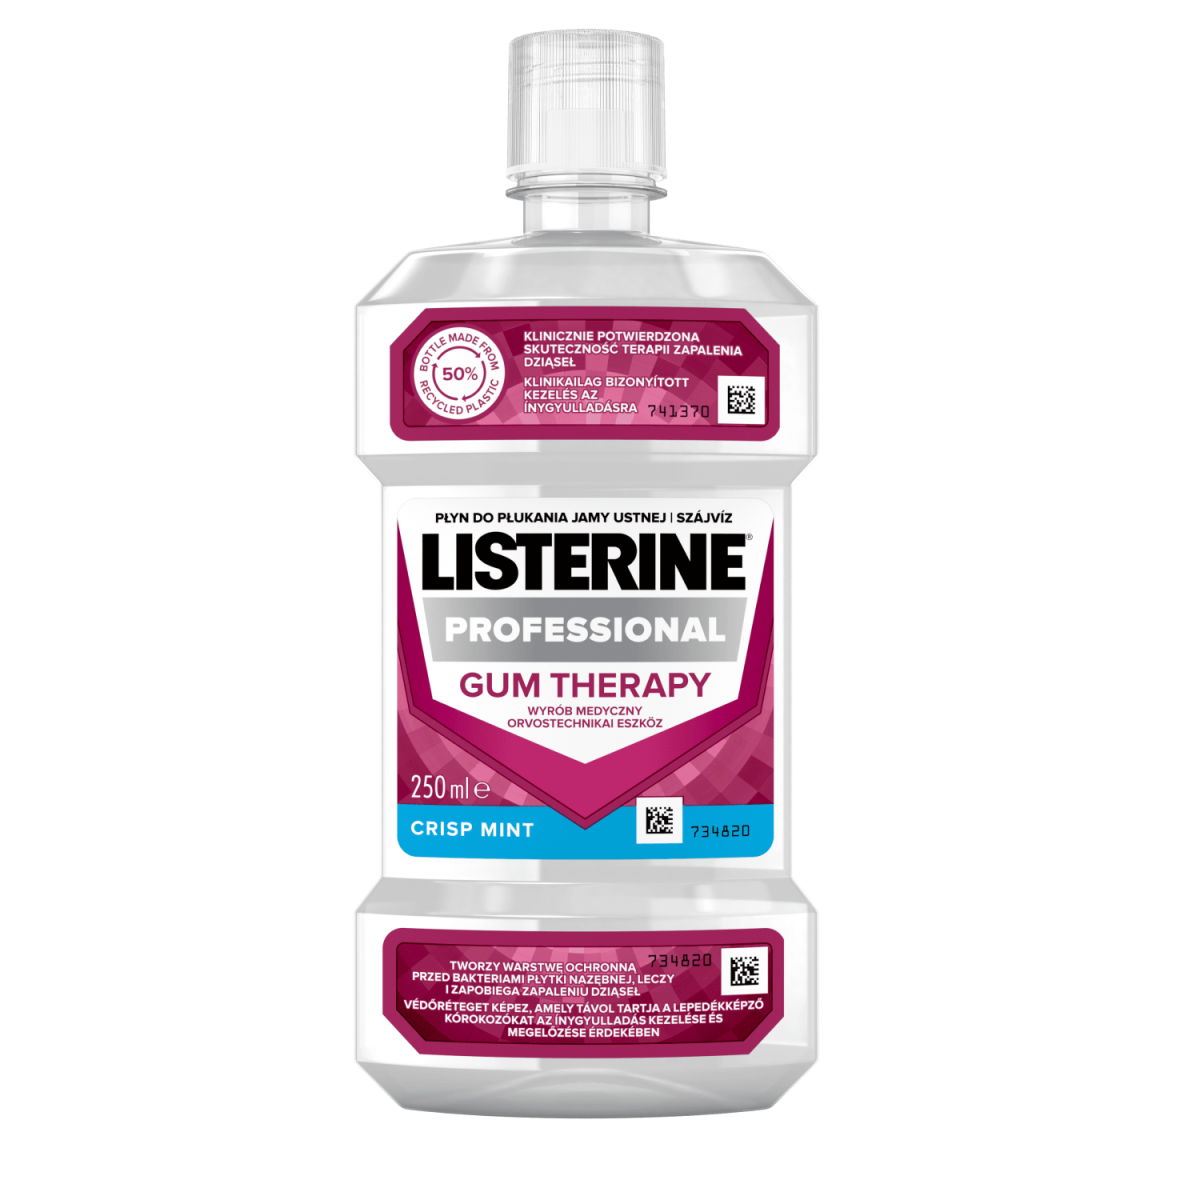 Listerine Professional Gum Therapy 250 ml orvostechnikai eszköz termékfotó, klinikailag bizonyított kezelés az ínygyulladásra és védőréteget képez, amely távol tartja a lepedékképző kórokozókat az ínygyulladás kezelése és megelőzése érdekében